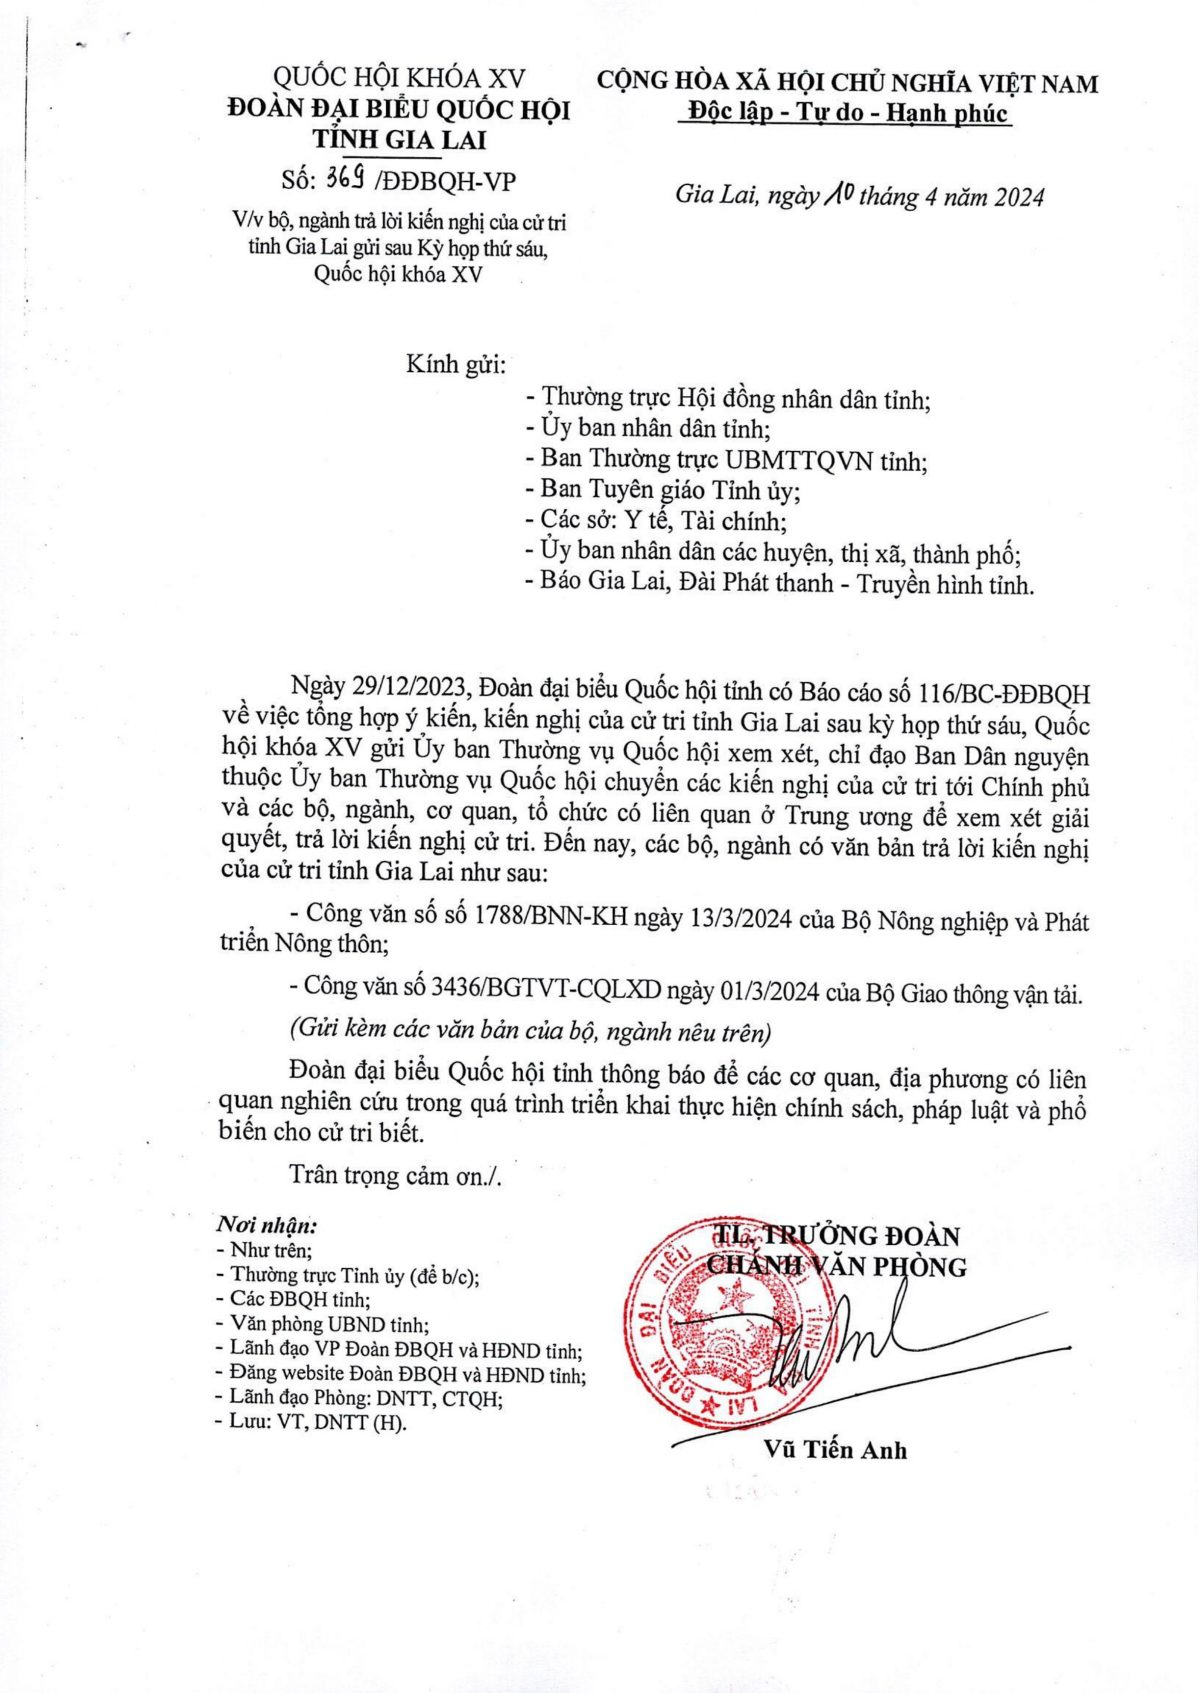 Bộ, ngành trả lời kiến nghị của cử tri tỉnh Gia Lai gửi sau kỳ thứ sáu QH khóa XV